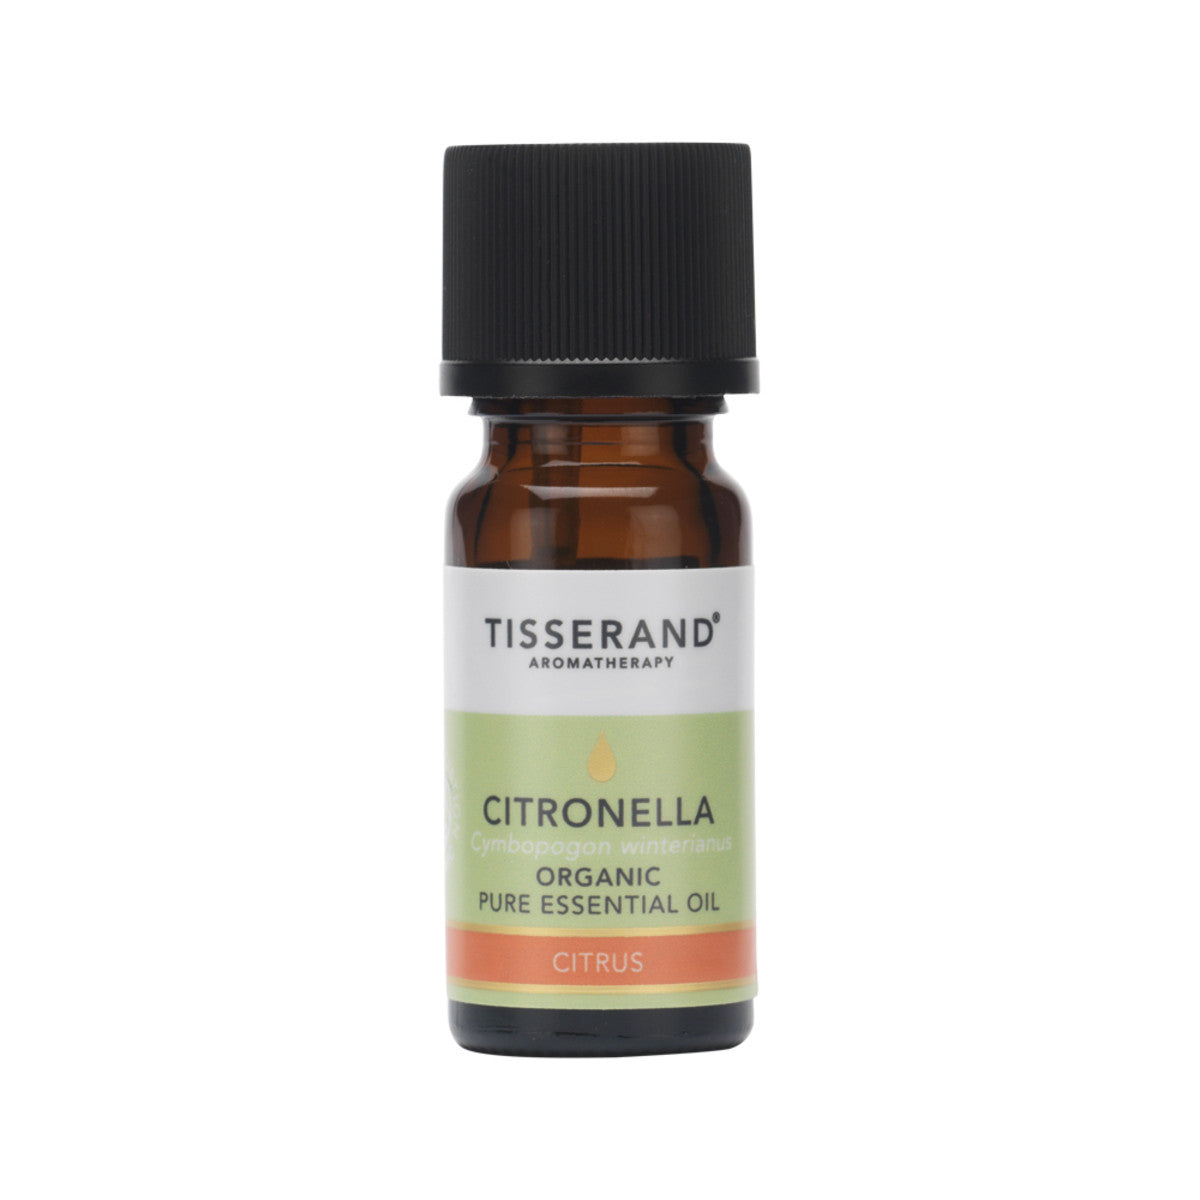 Tisserand Organic Citronella 9ml